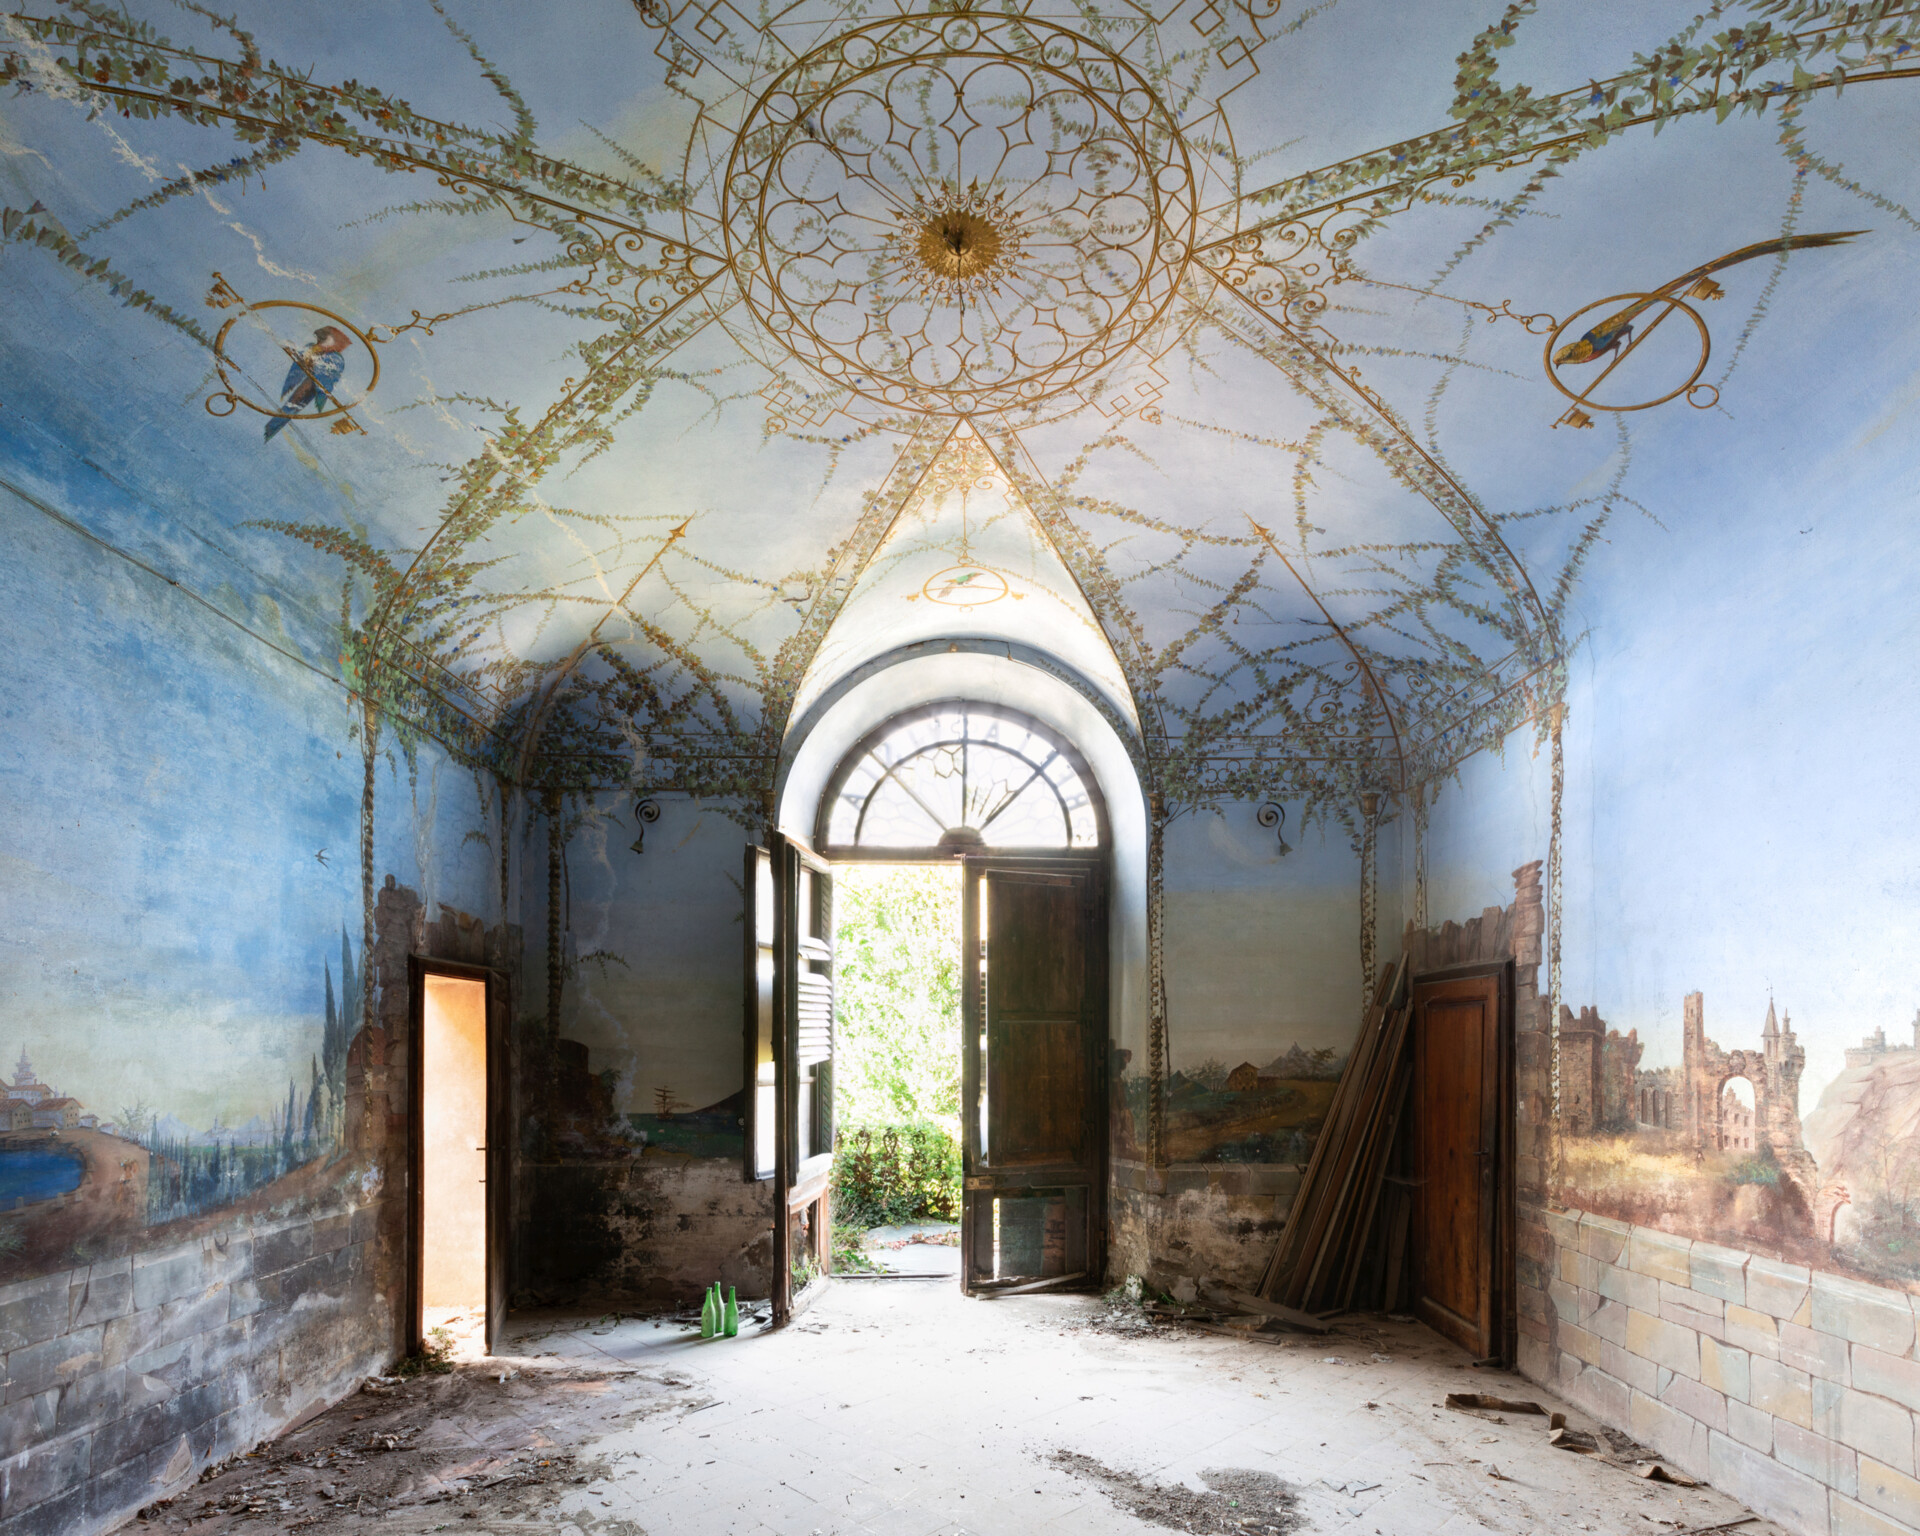 Bellavista - Abandoned Villa in Italy